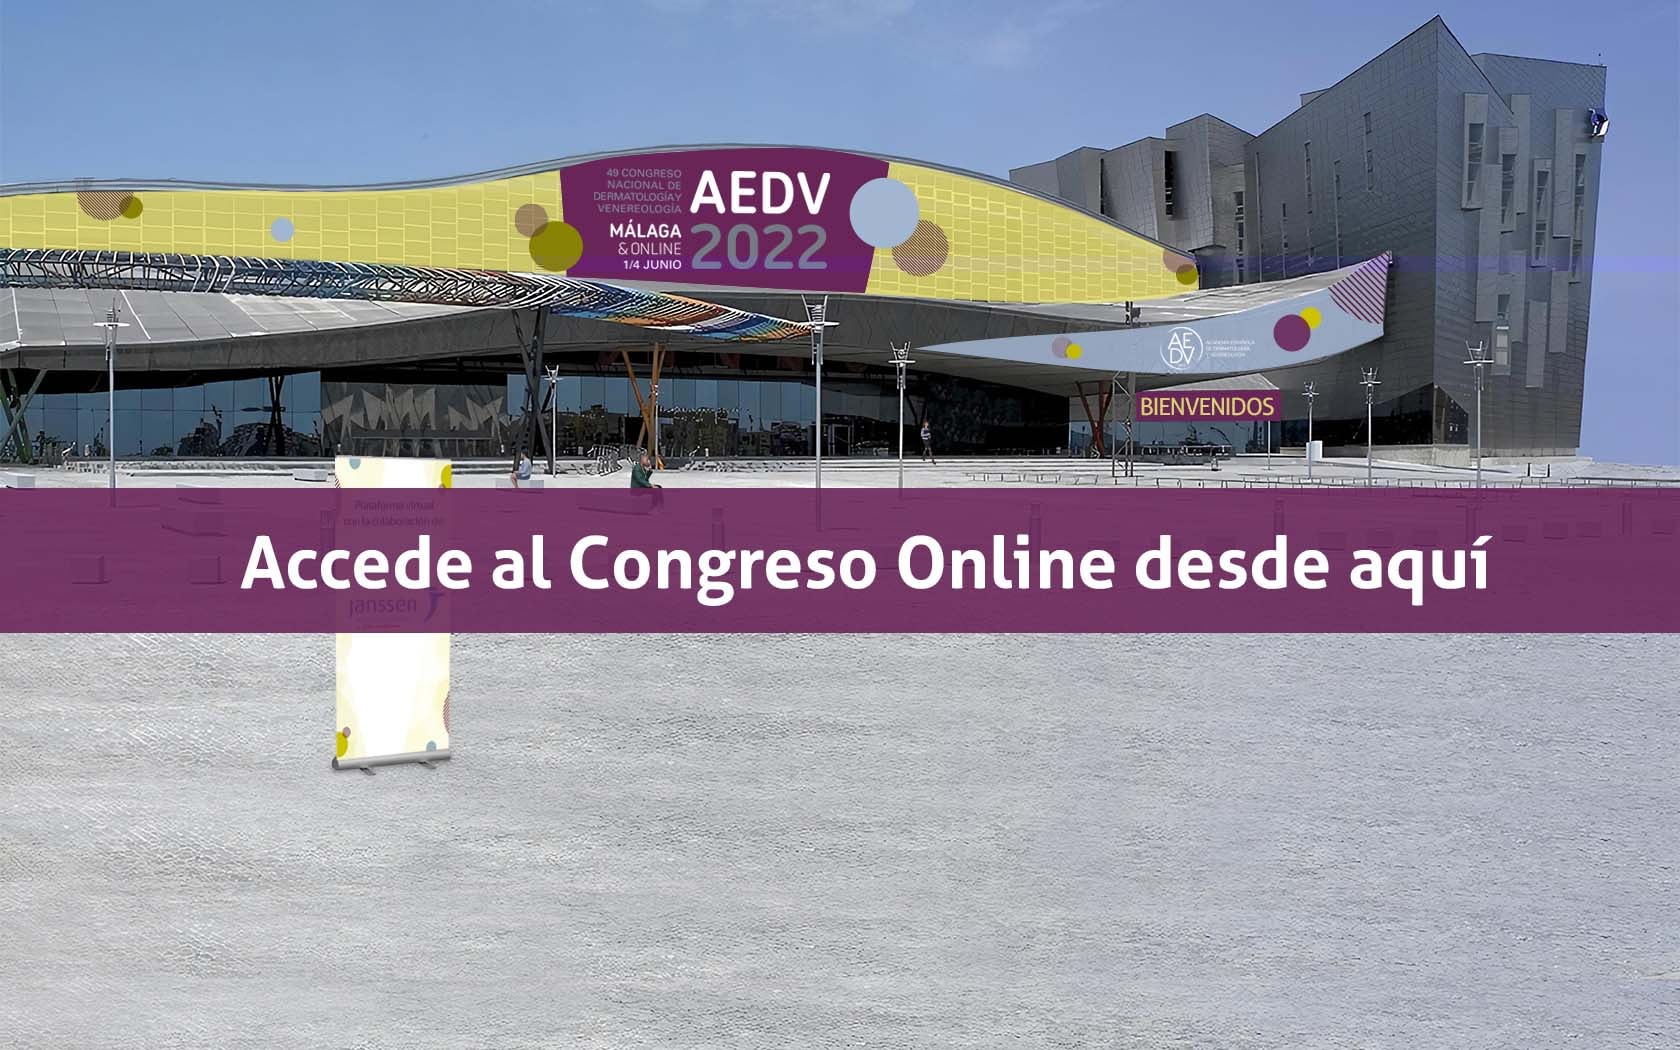 Accede al Congreso Virtual AEDV 2022